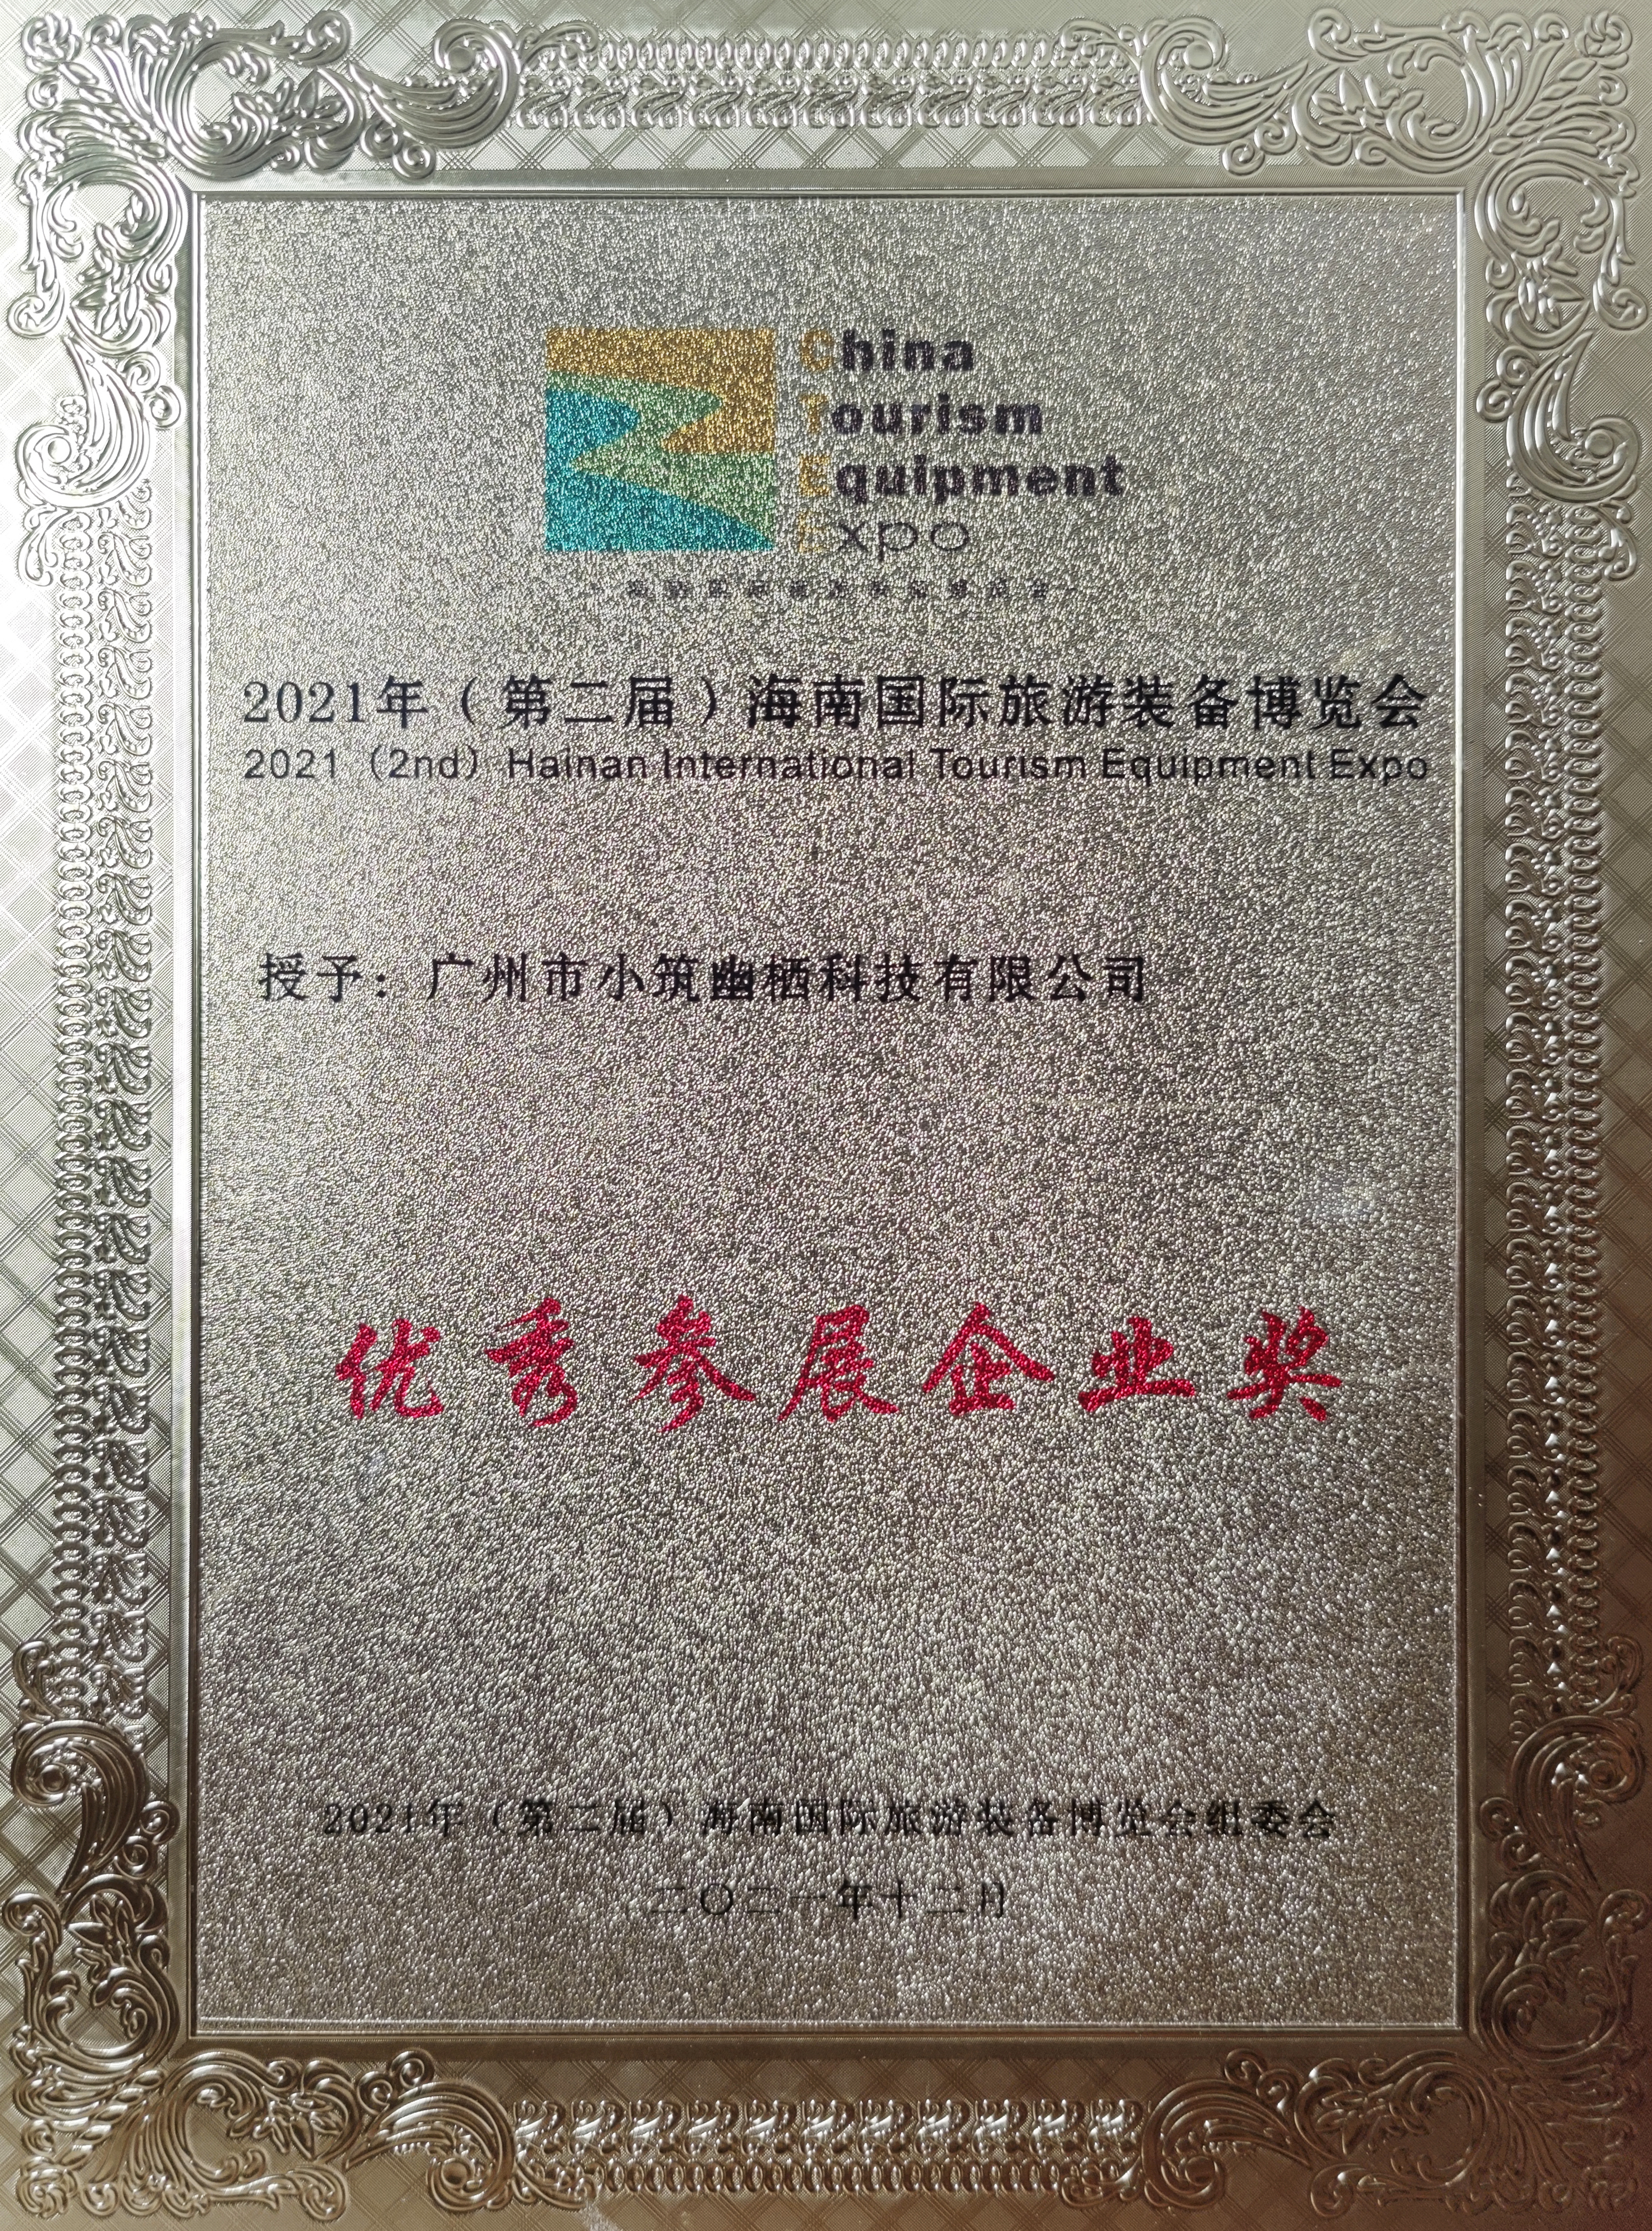 certificado de honor (1)